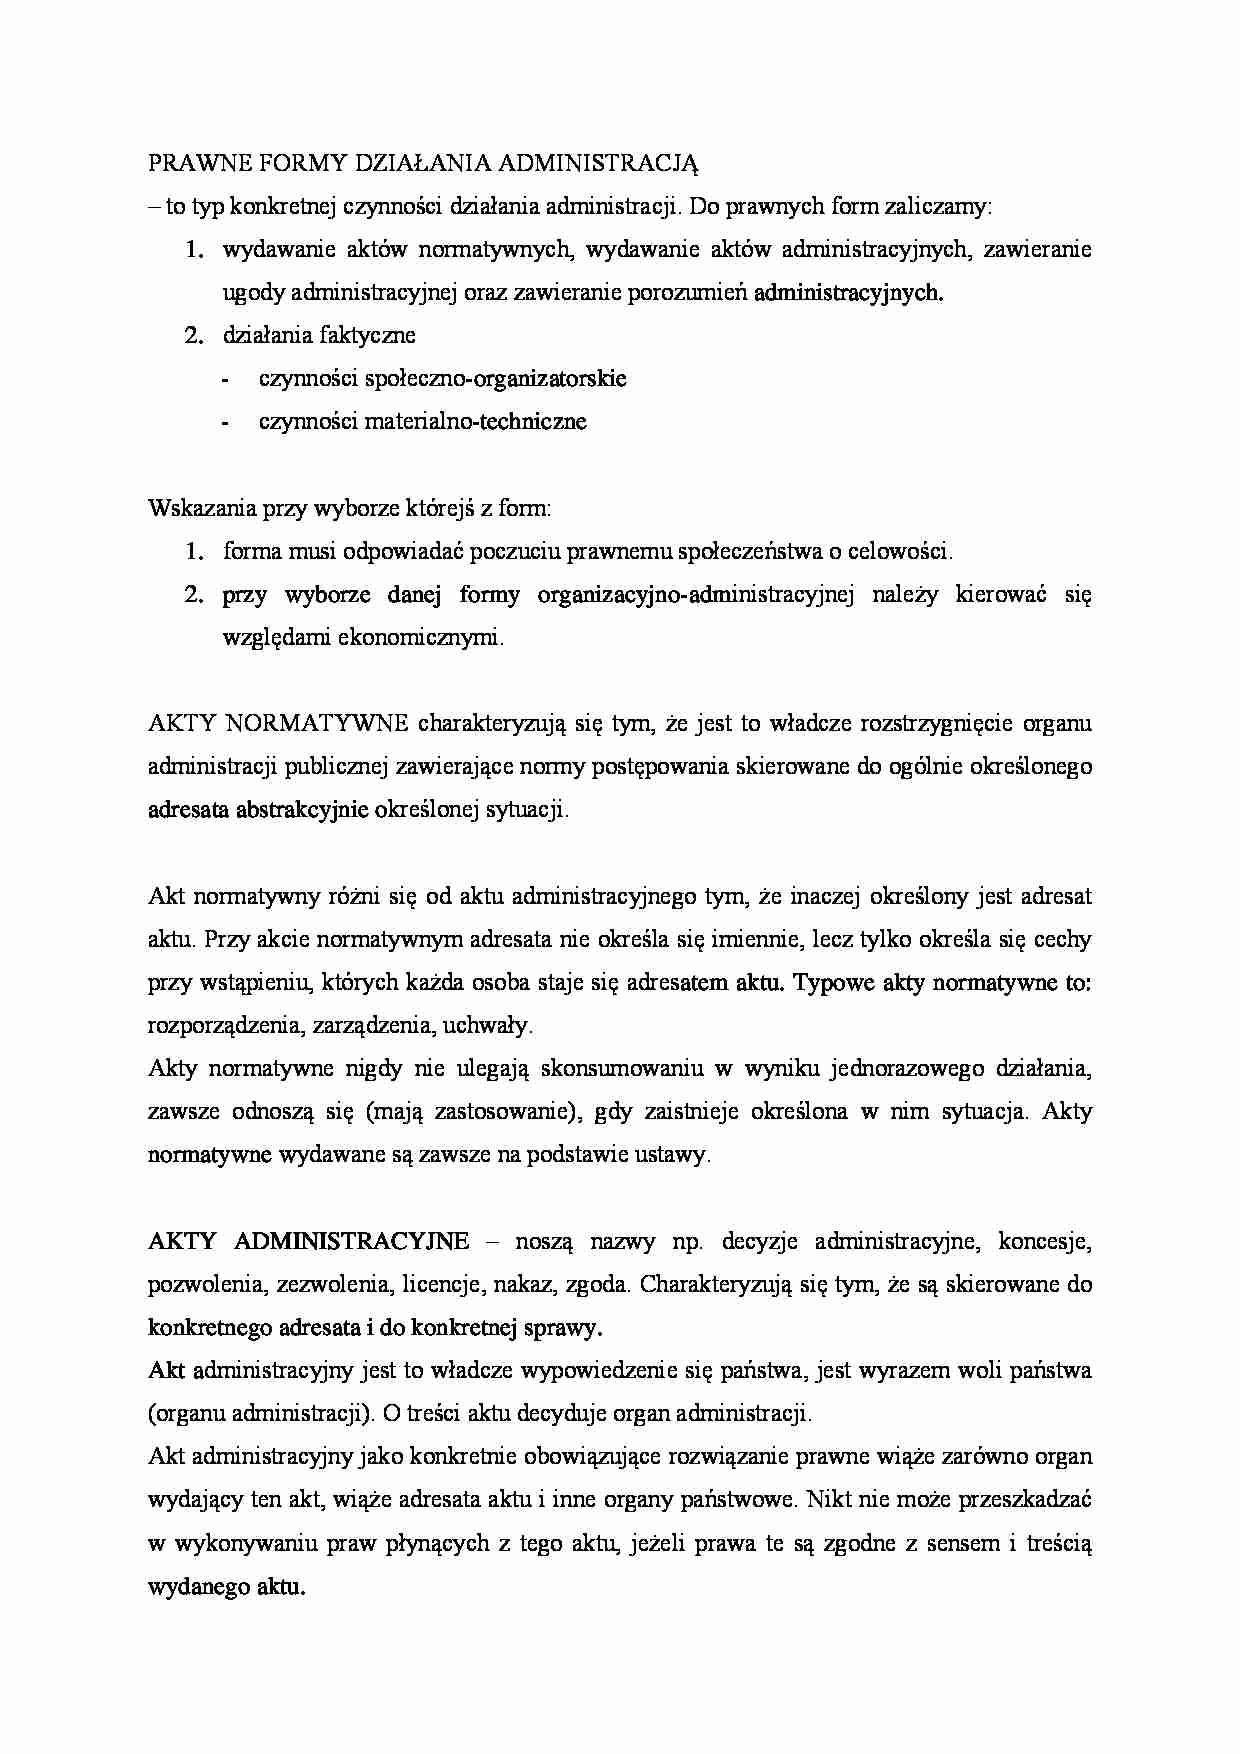 Prawne formy działania administracji - Akt normatywny - strona 1